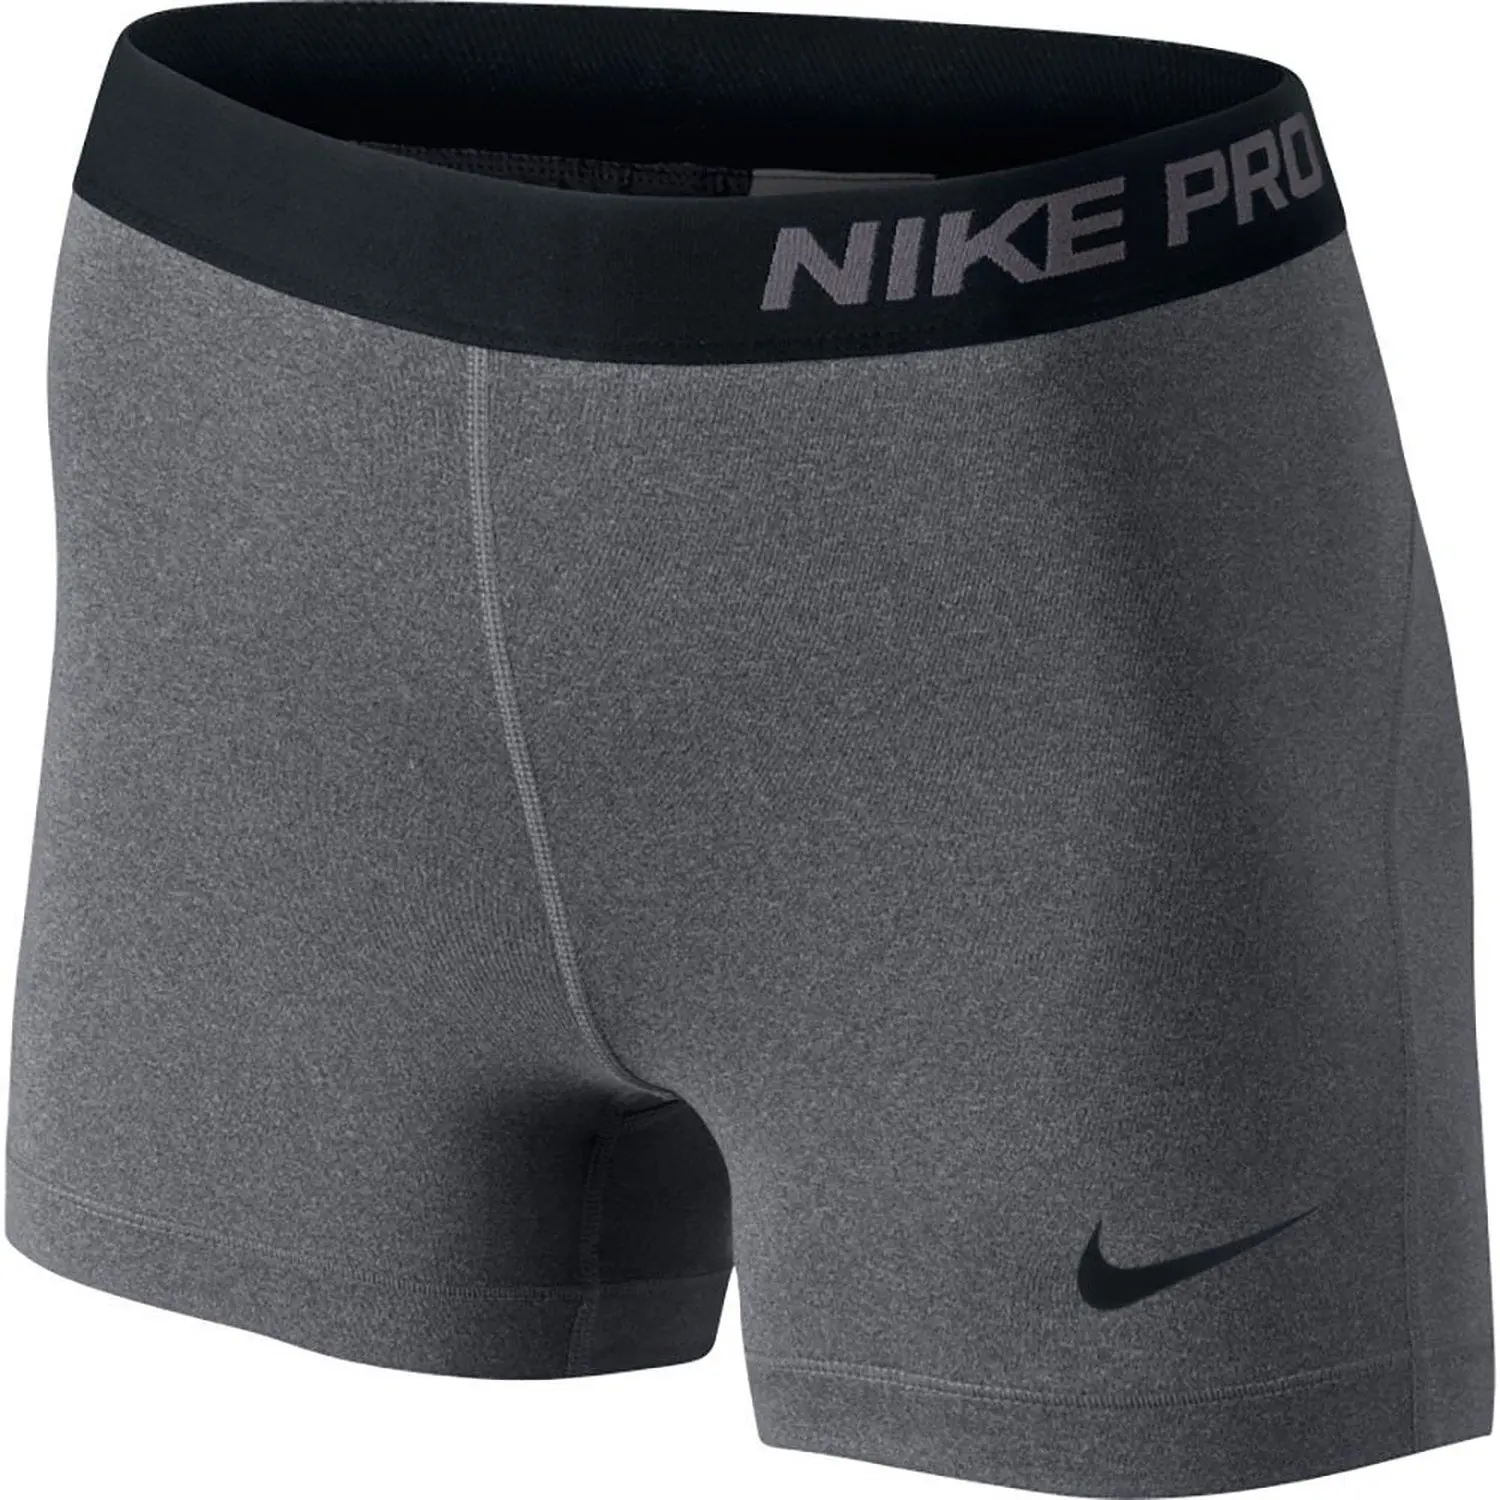 Шорты найк про. Nike Pro шорты. Велошорты мужские Nike Pro. 23 Nike Pro. Шорты Nike Pro женские.